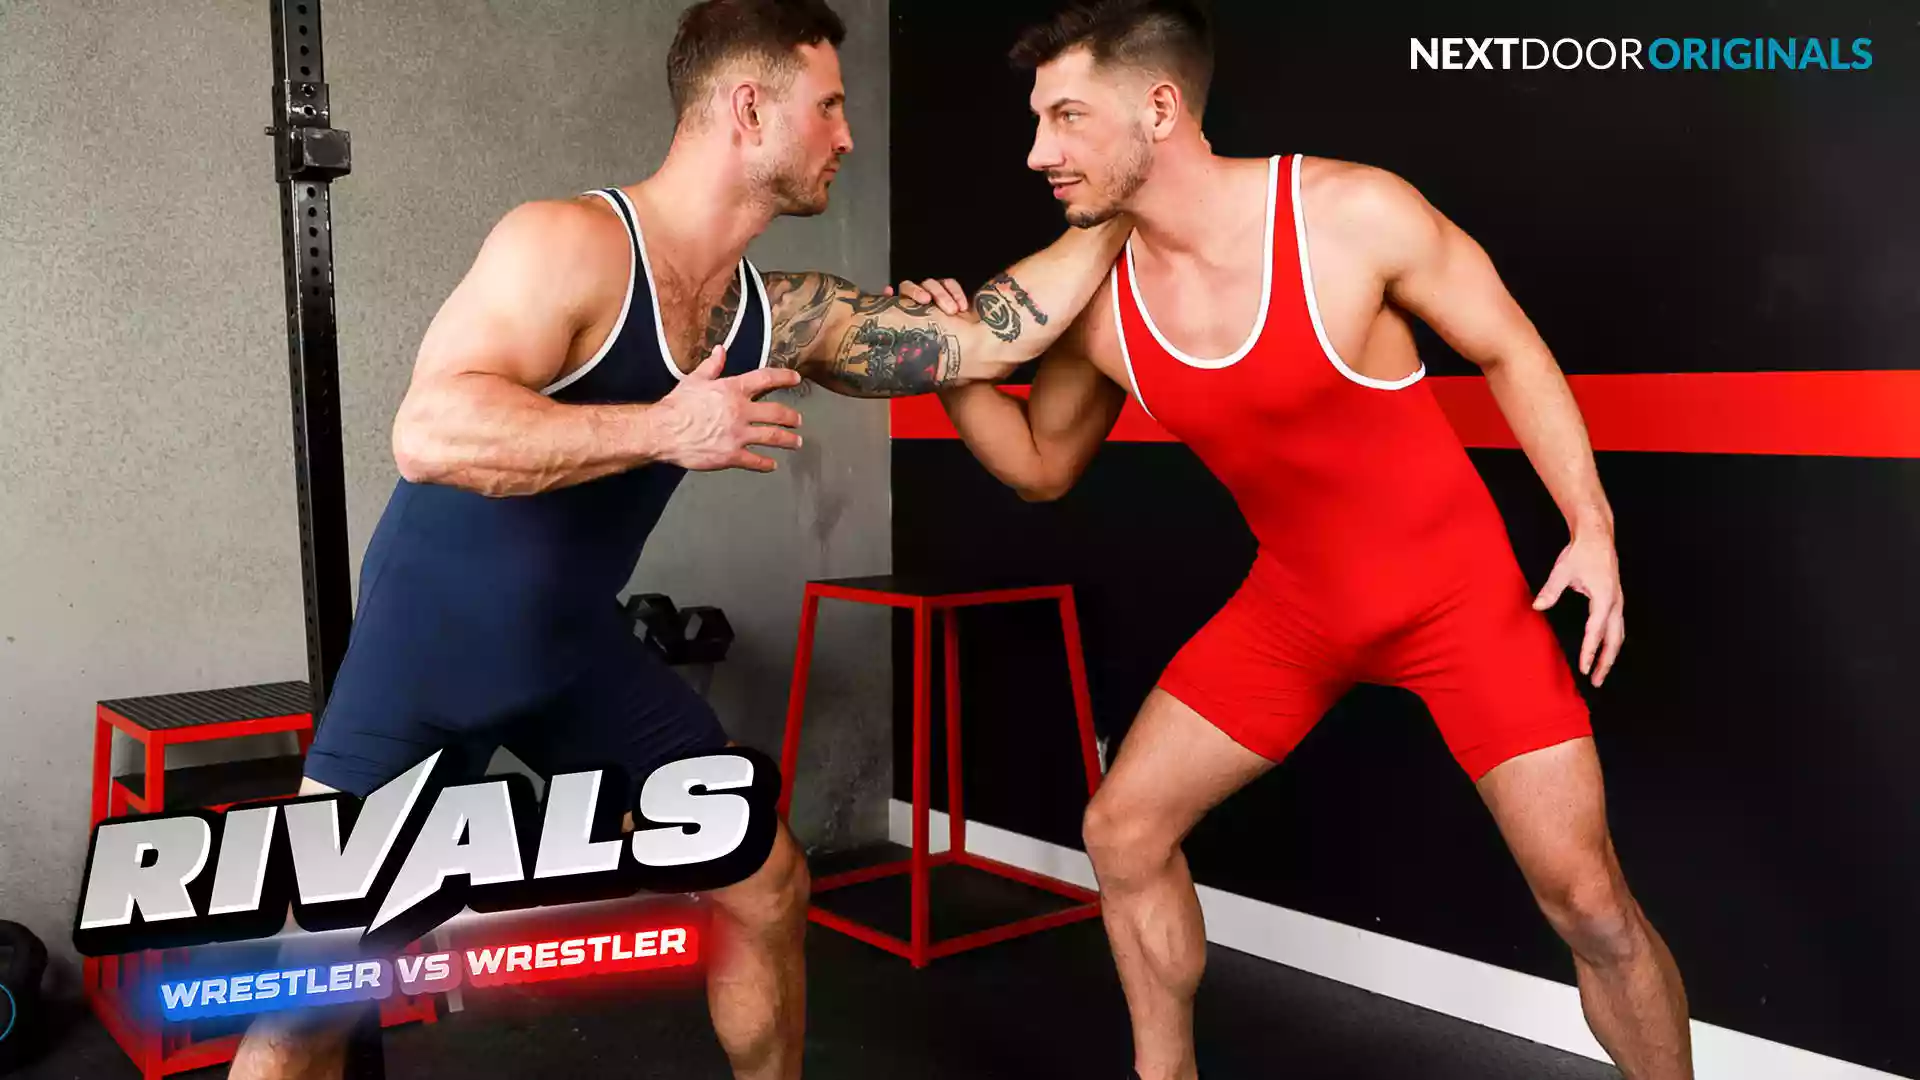 Rivals, Wrestler Vs Wrestler – Blain O’Connor and Jordan Starr